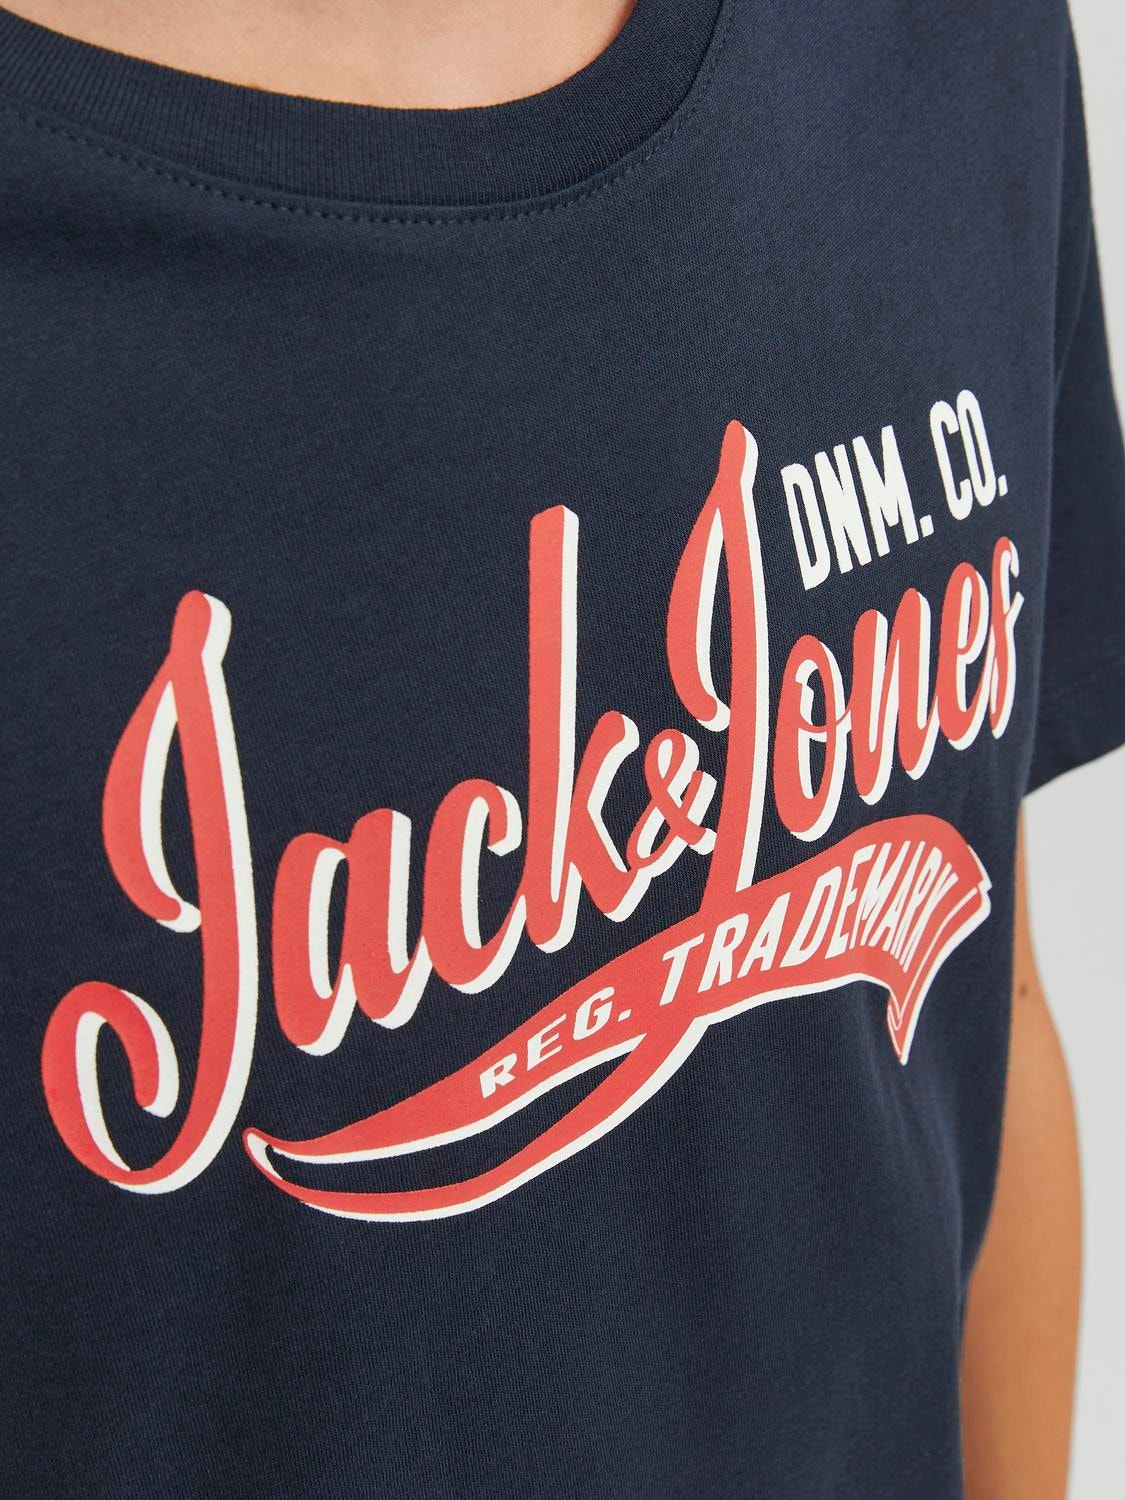 Jack & Jones Poikien Painettu T-paita -Navy Blazer - 12237367